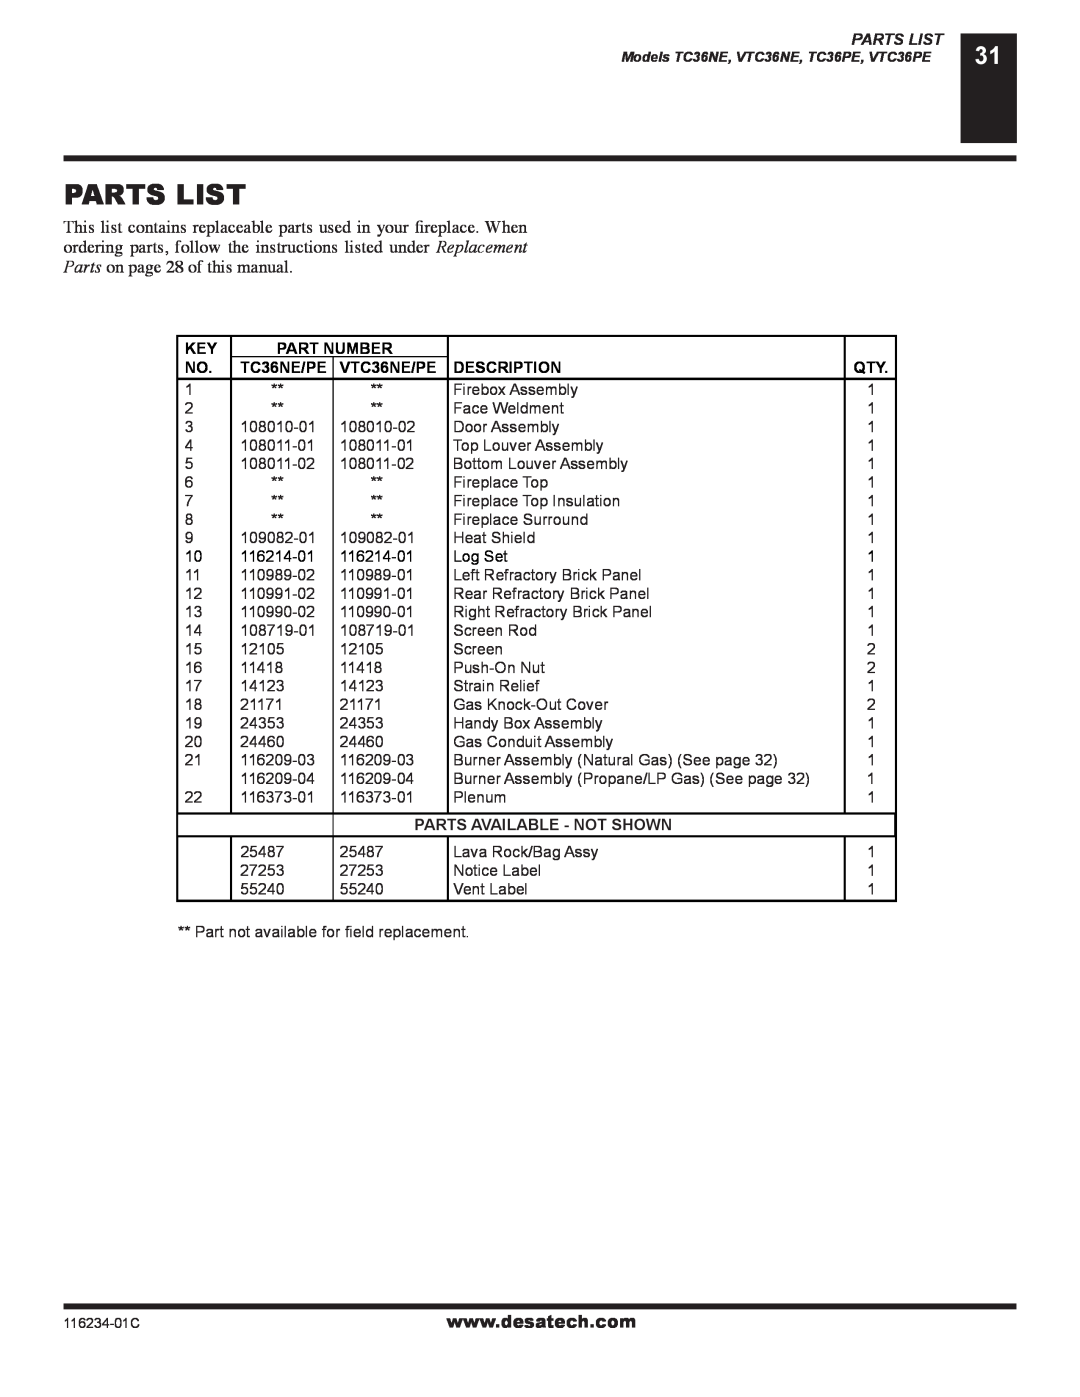 Desa (V)TC36NE SERIES, (V)TC36PE SERIES Parts List, Part Number, VTC36NE/PE, Description, Parts Available - Not Shown 